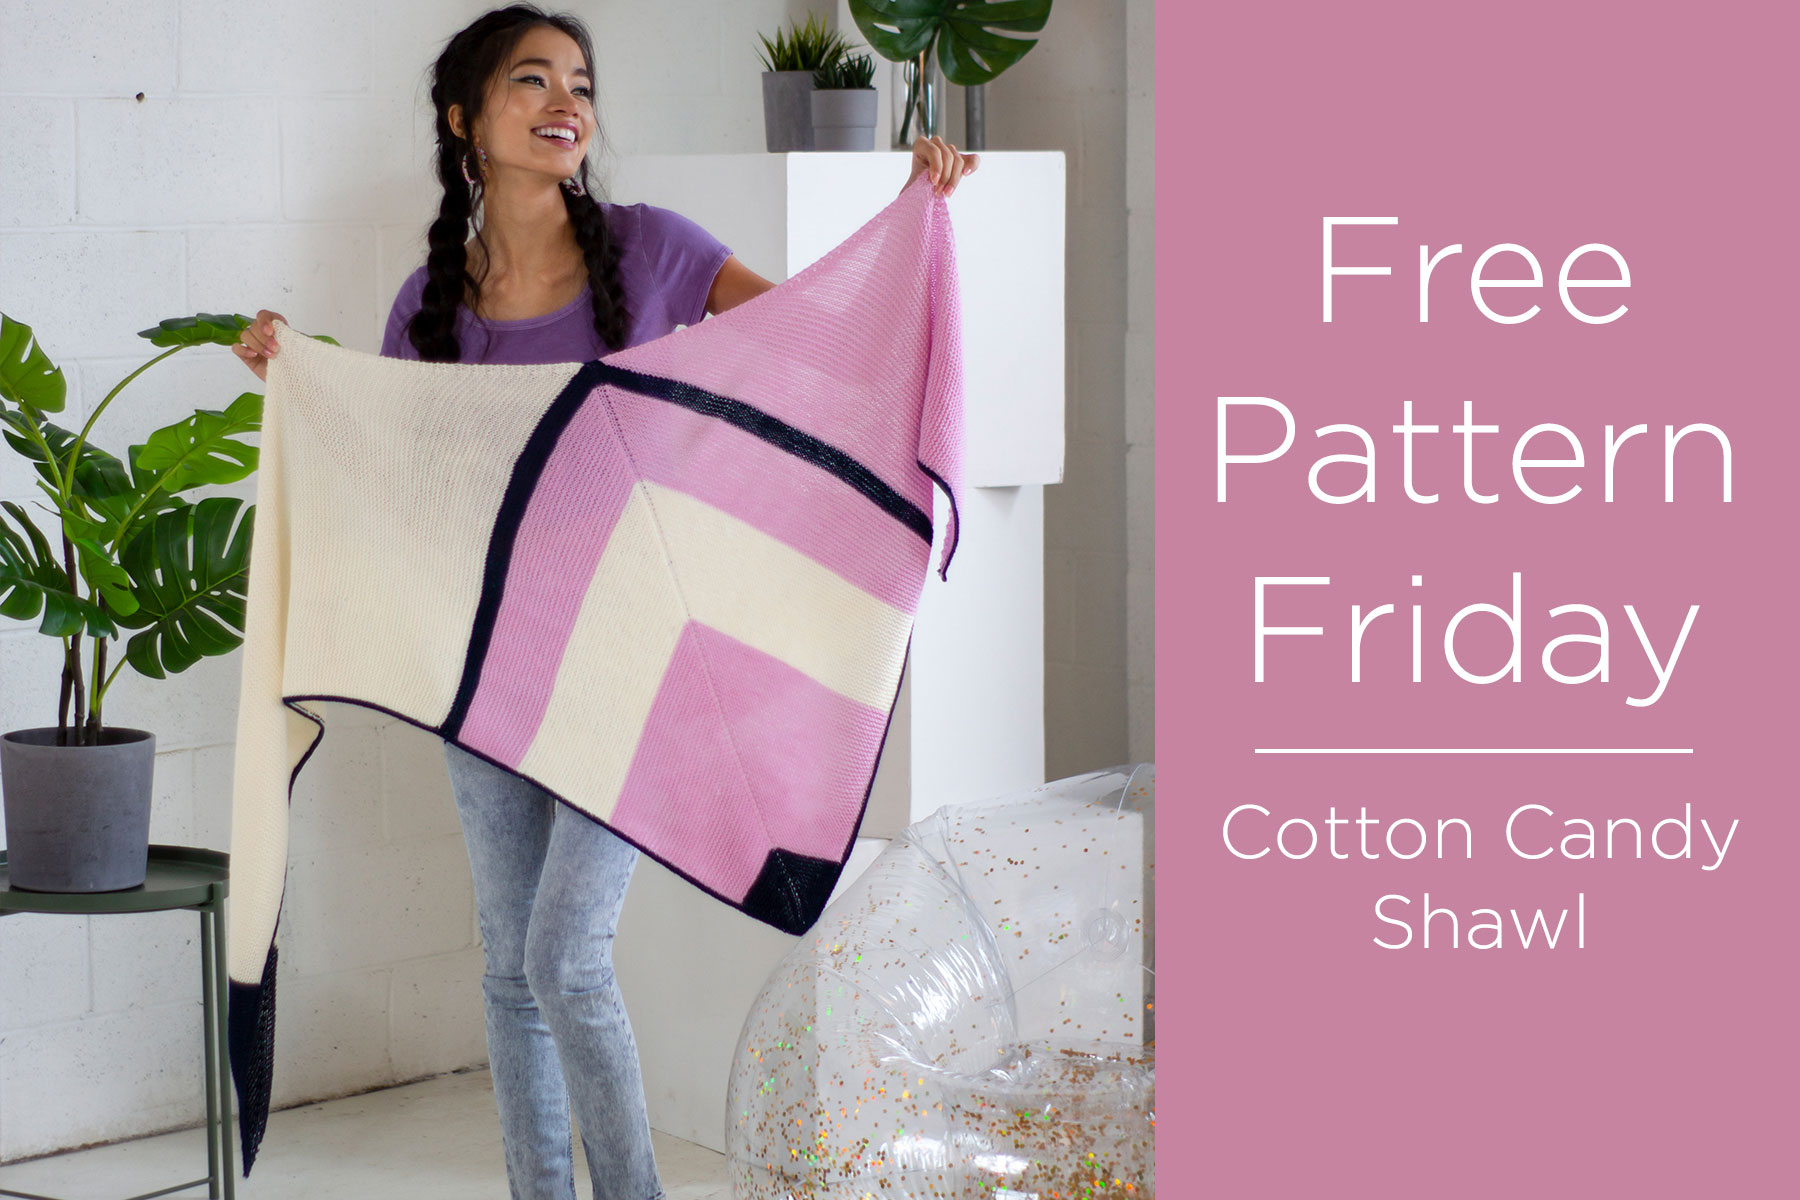 Free Pattern Friday - Cotton Candy Shawl